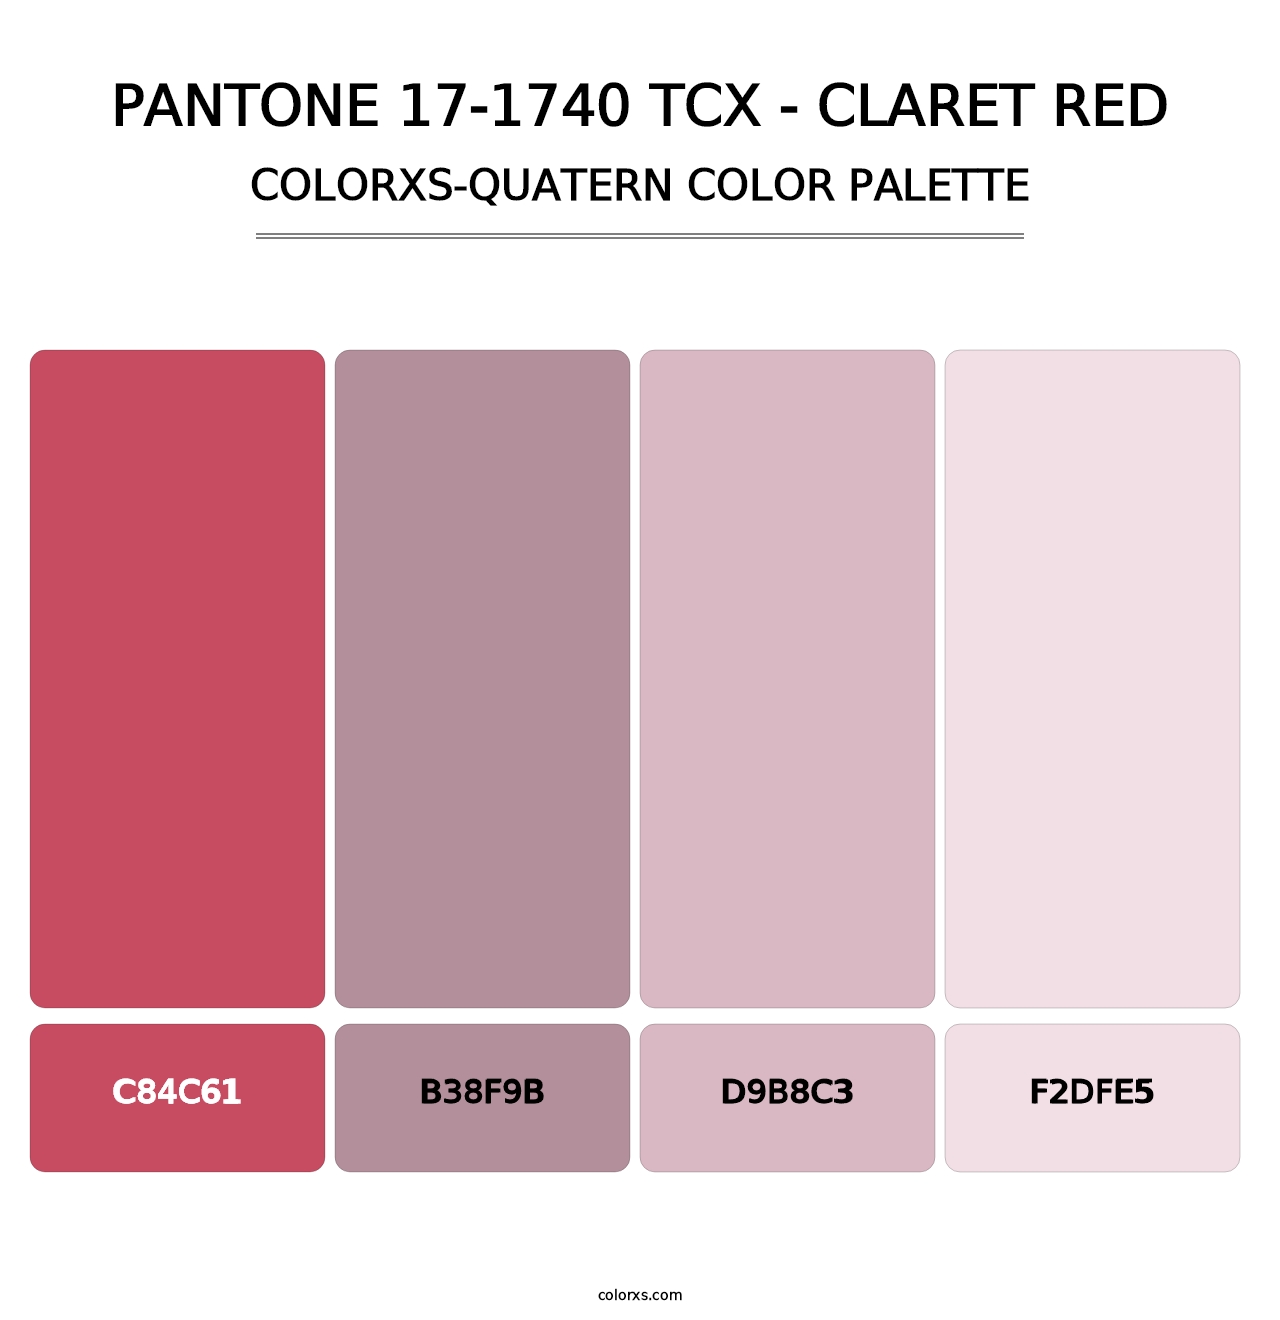 PANTONE 17-1740 TCX - Claret Red - Colorxs Quatern Palette